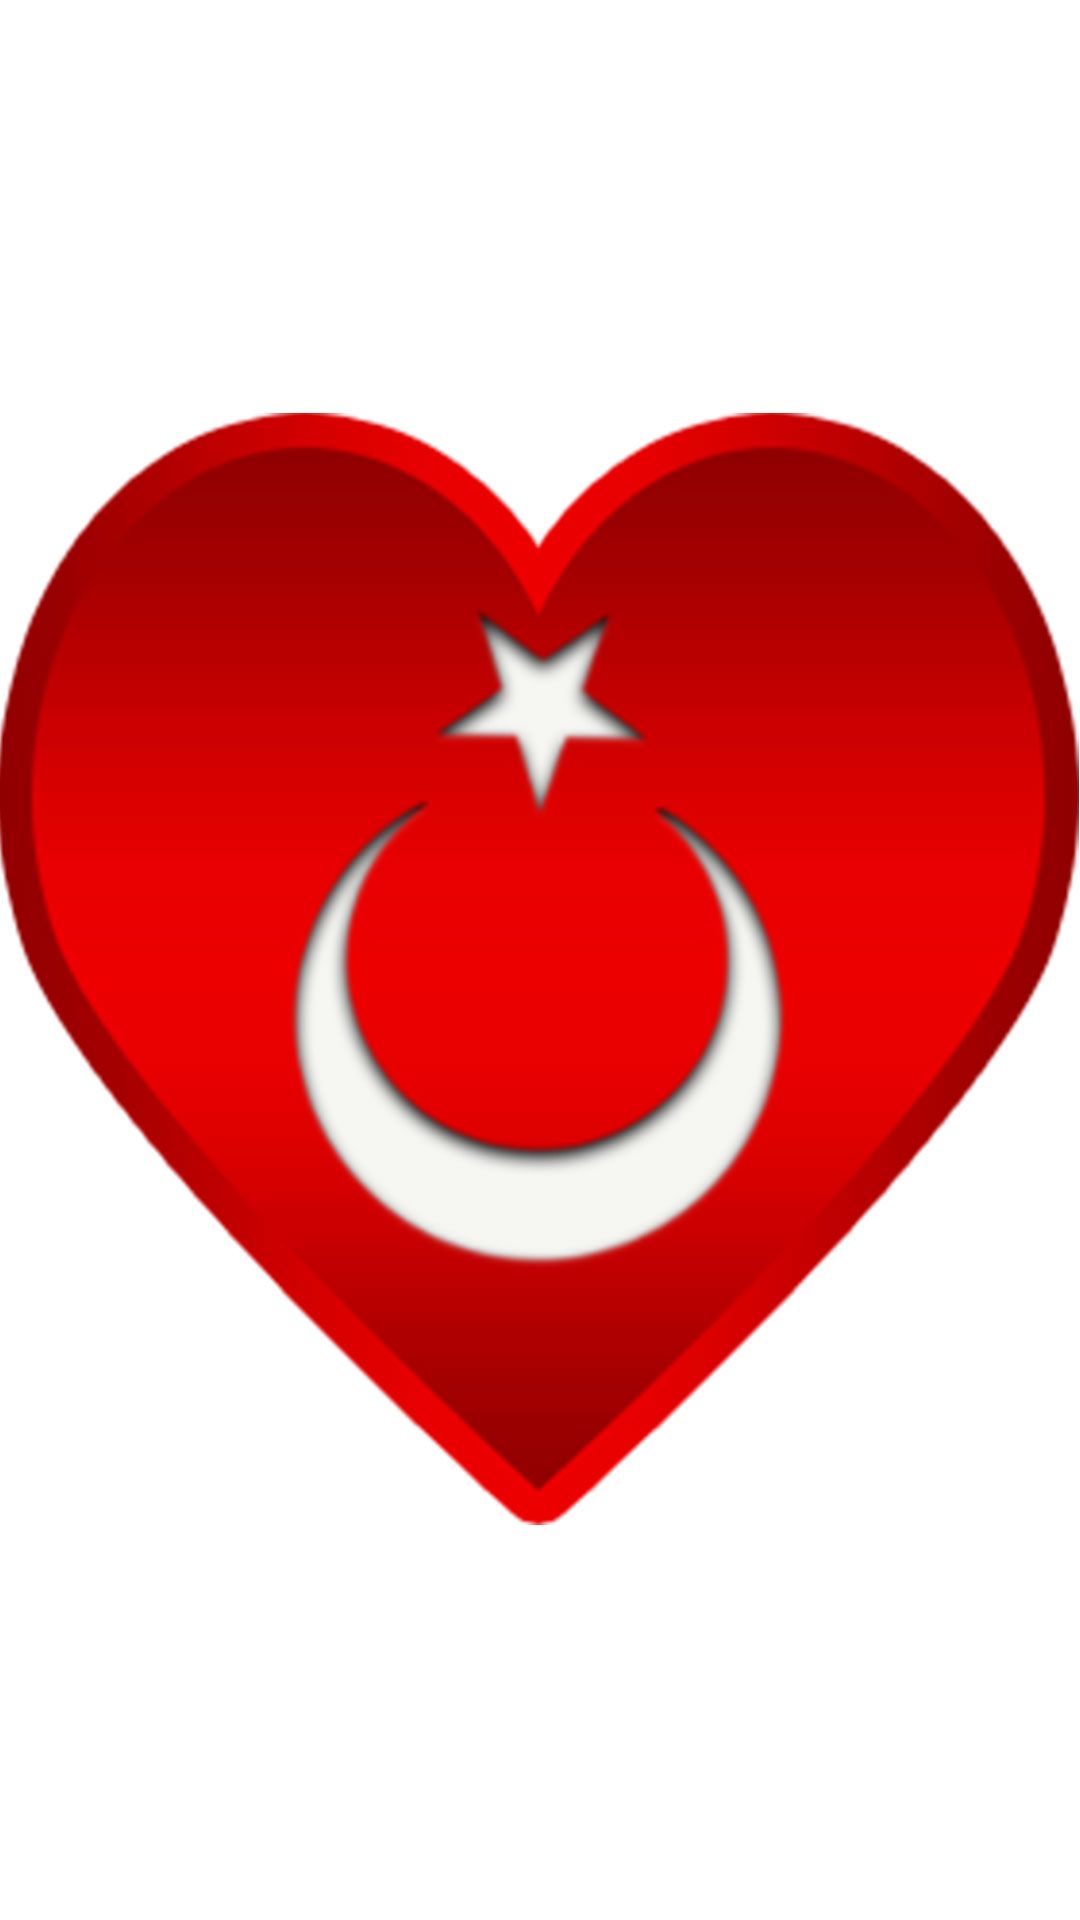 Kalpli turk bayragi 2